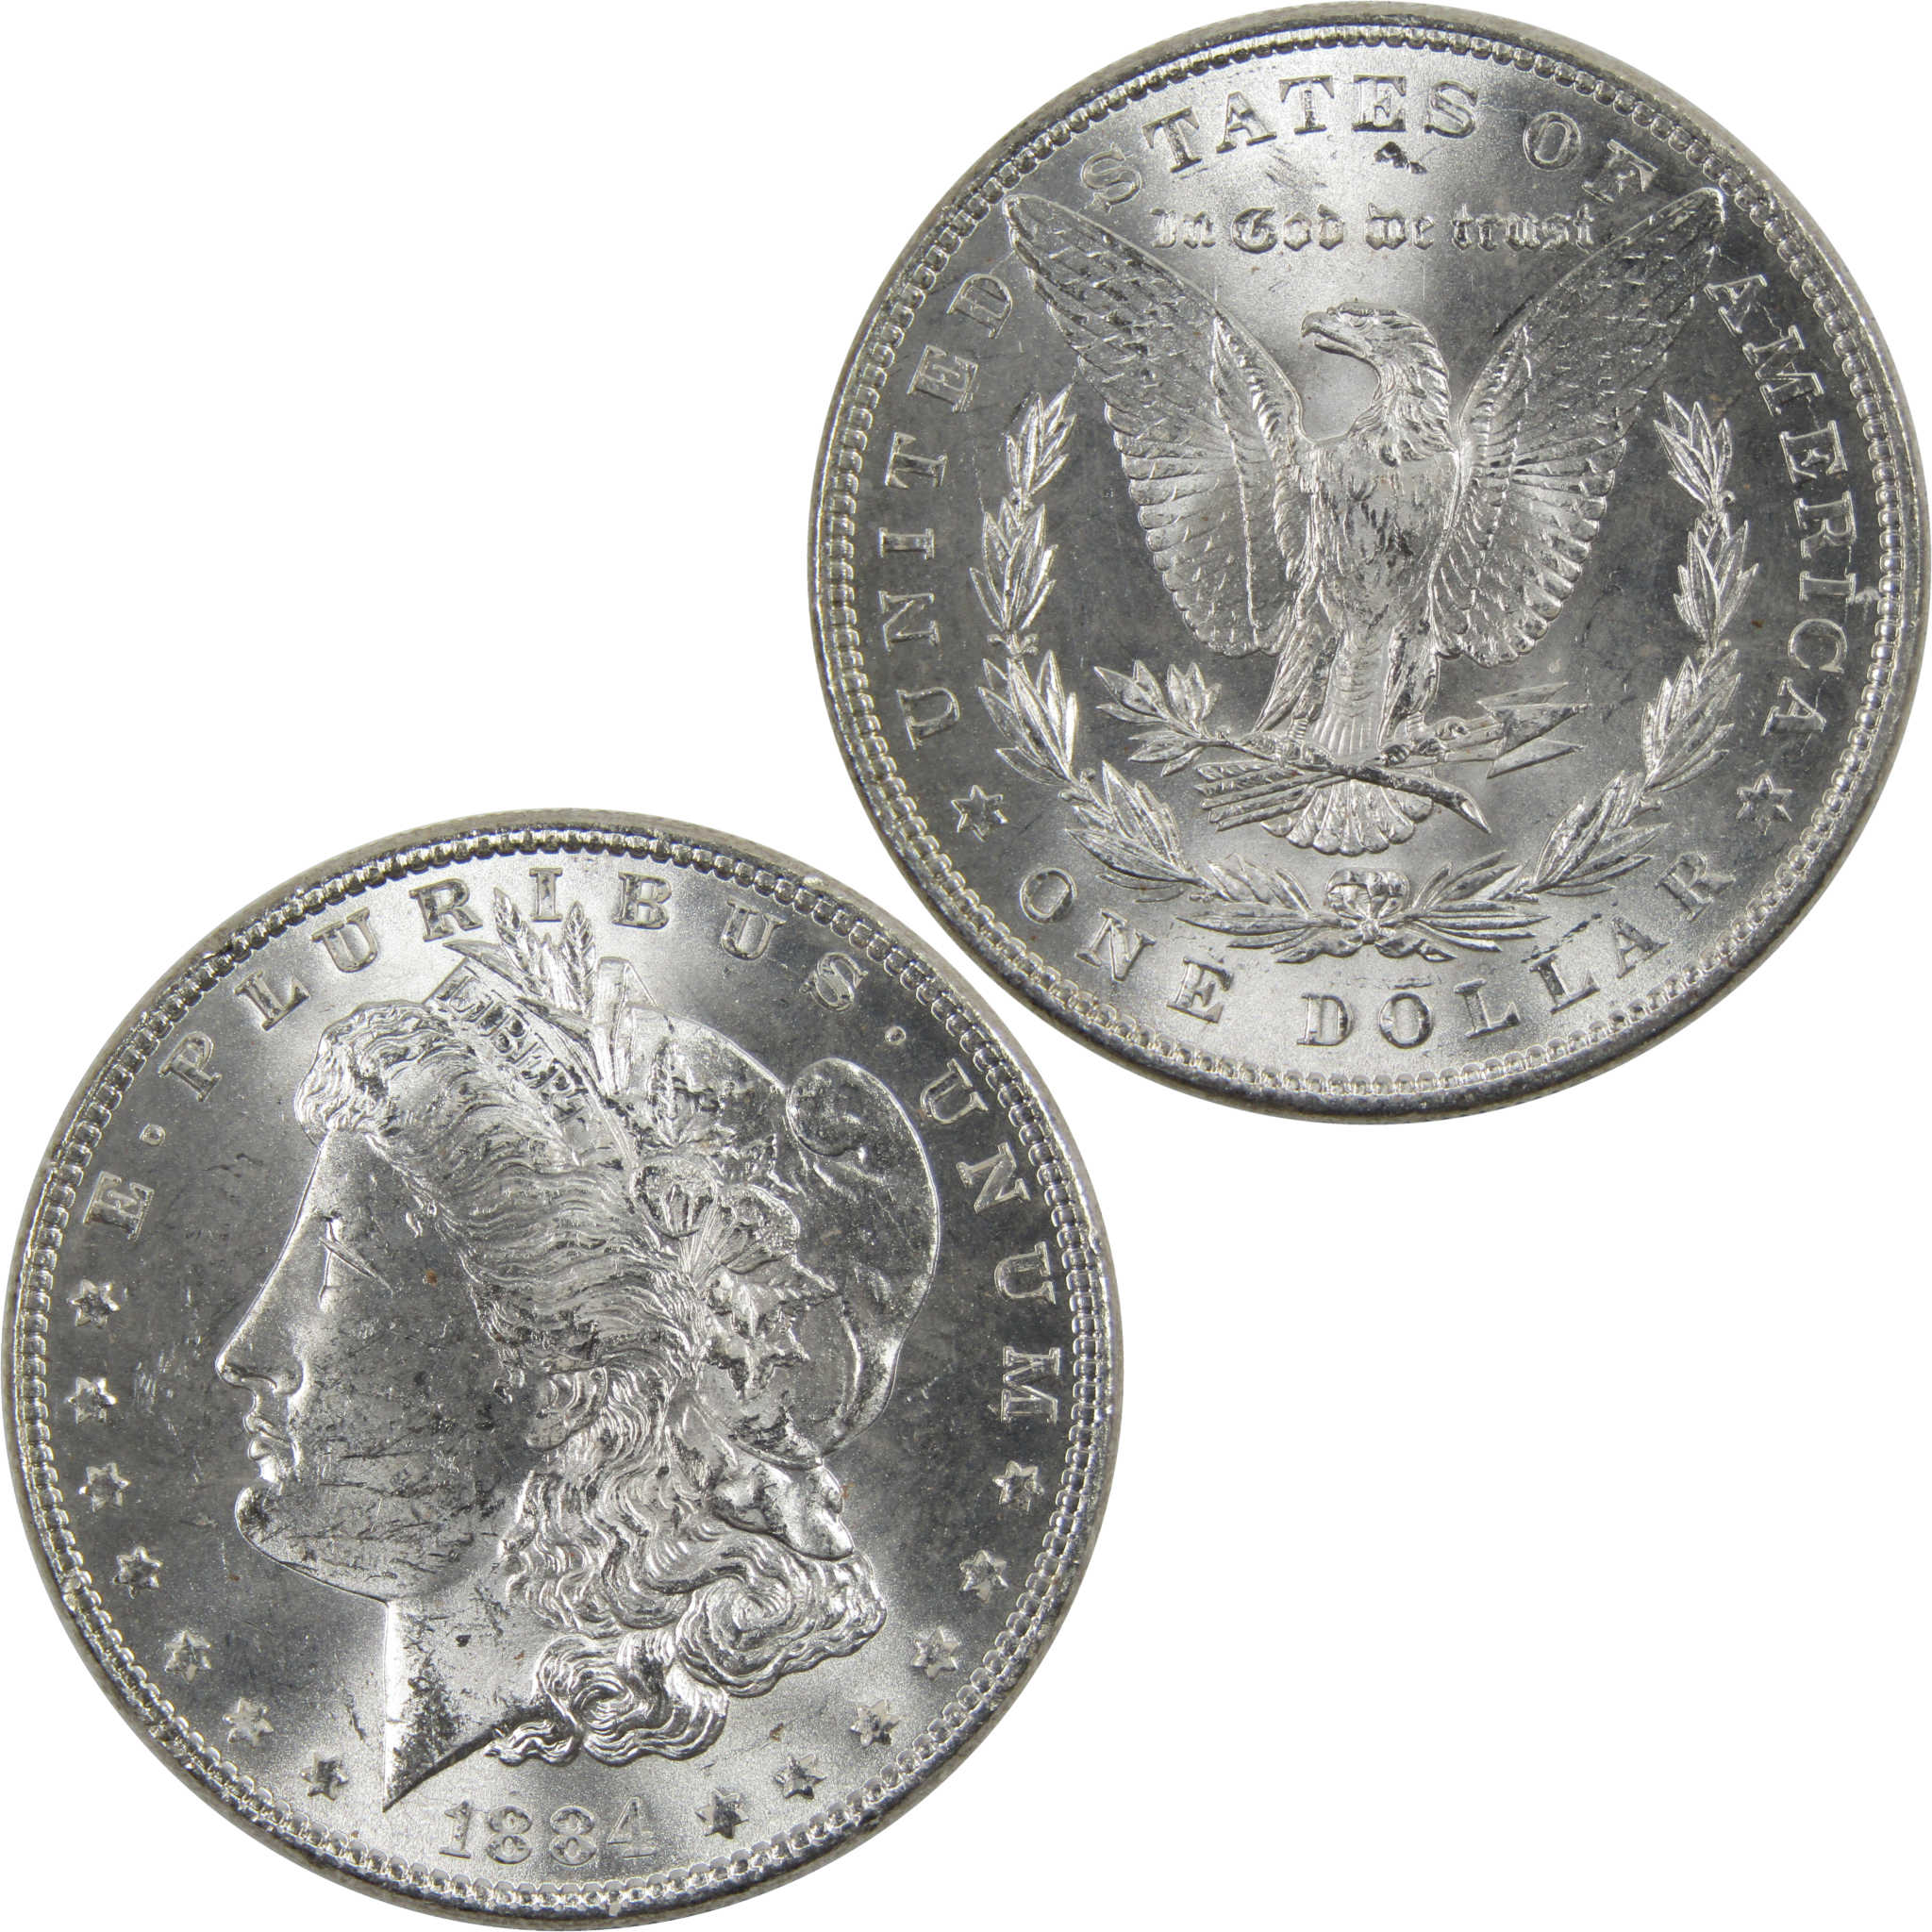 1884 Morgan Dollar BU Uncirculated 90% Silver $1 Coin SKU:I6025 - Morgan coin - Morgan silver dollar - Morgan silver dollar for sale - Profile Coins &amp; Collectibles